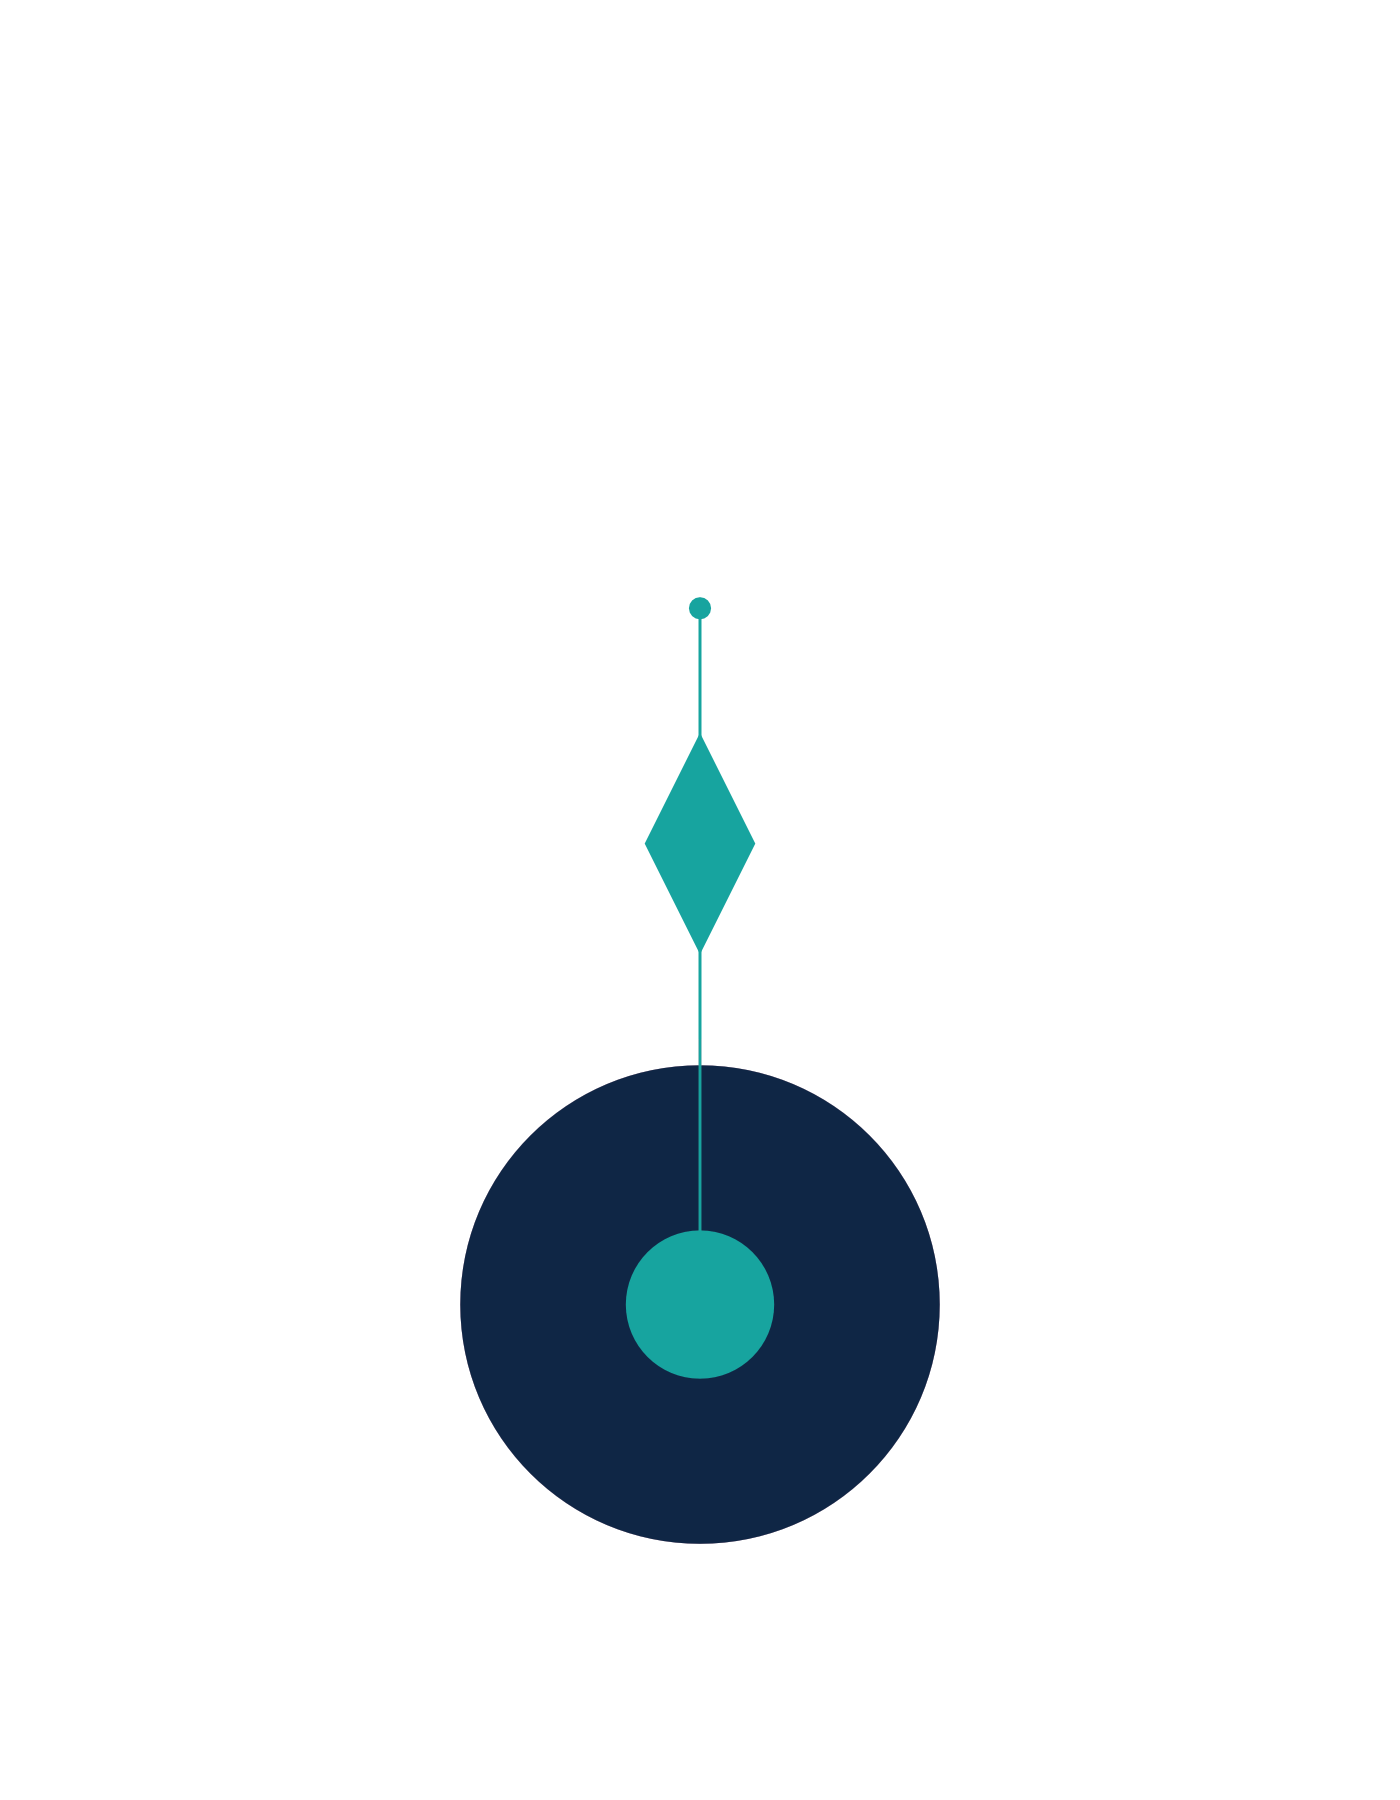 Syzygy - definition